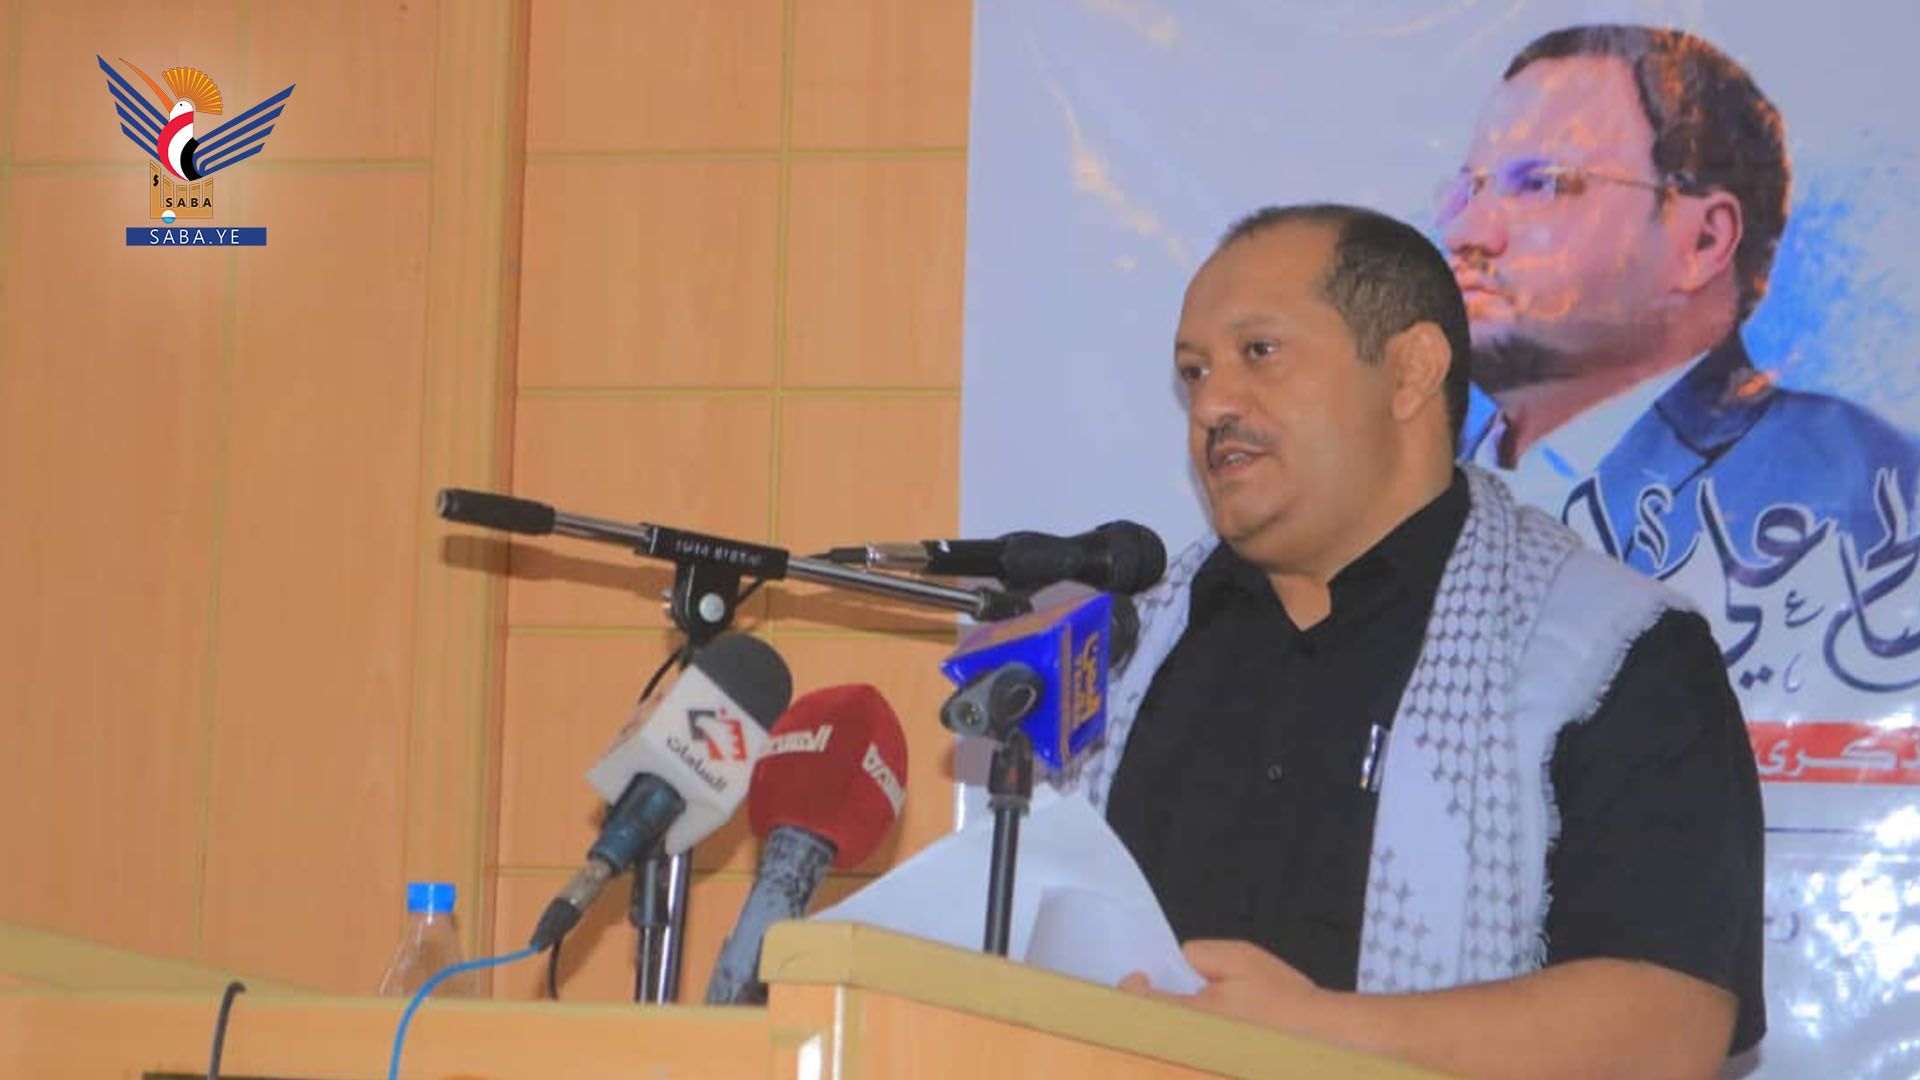  برگزاری سمینار همبستگی در استان حدیده با عنوان «یمن غایب از بشردوستانه بین المللی و دستور کار آن ها»